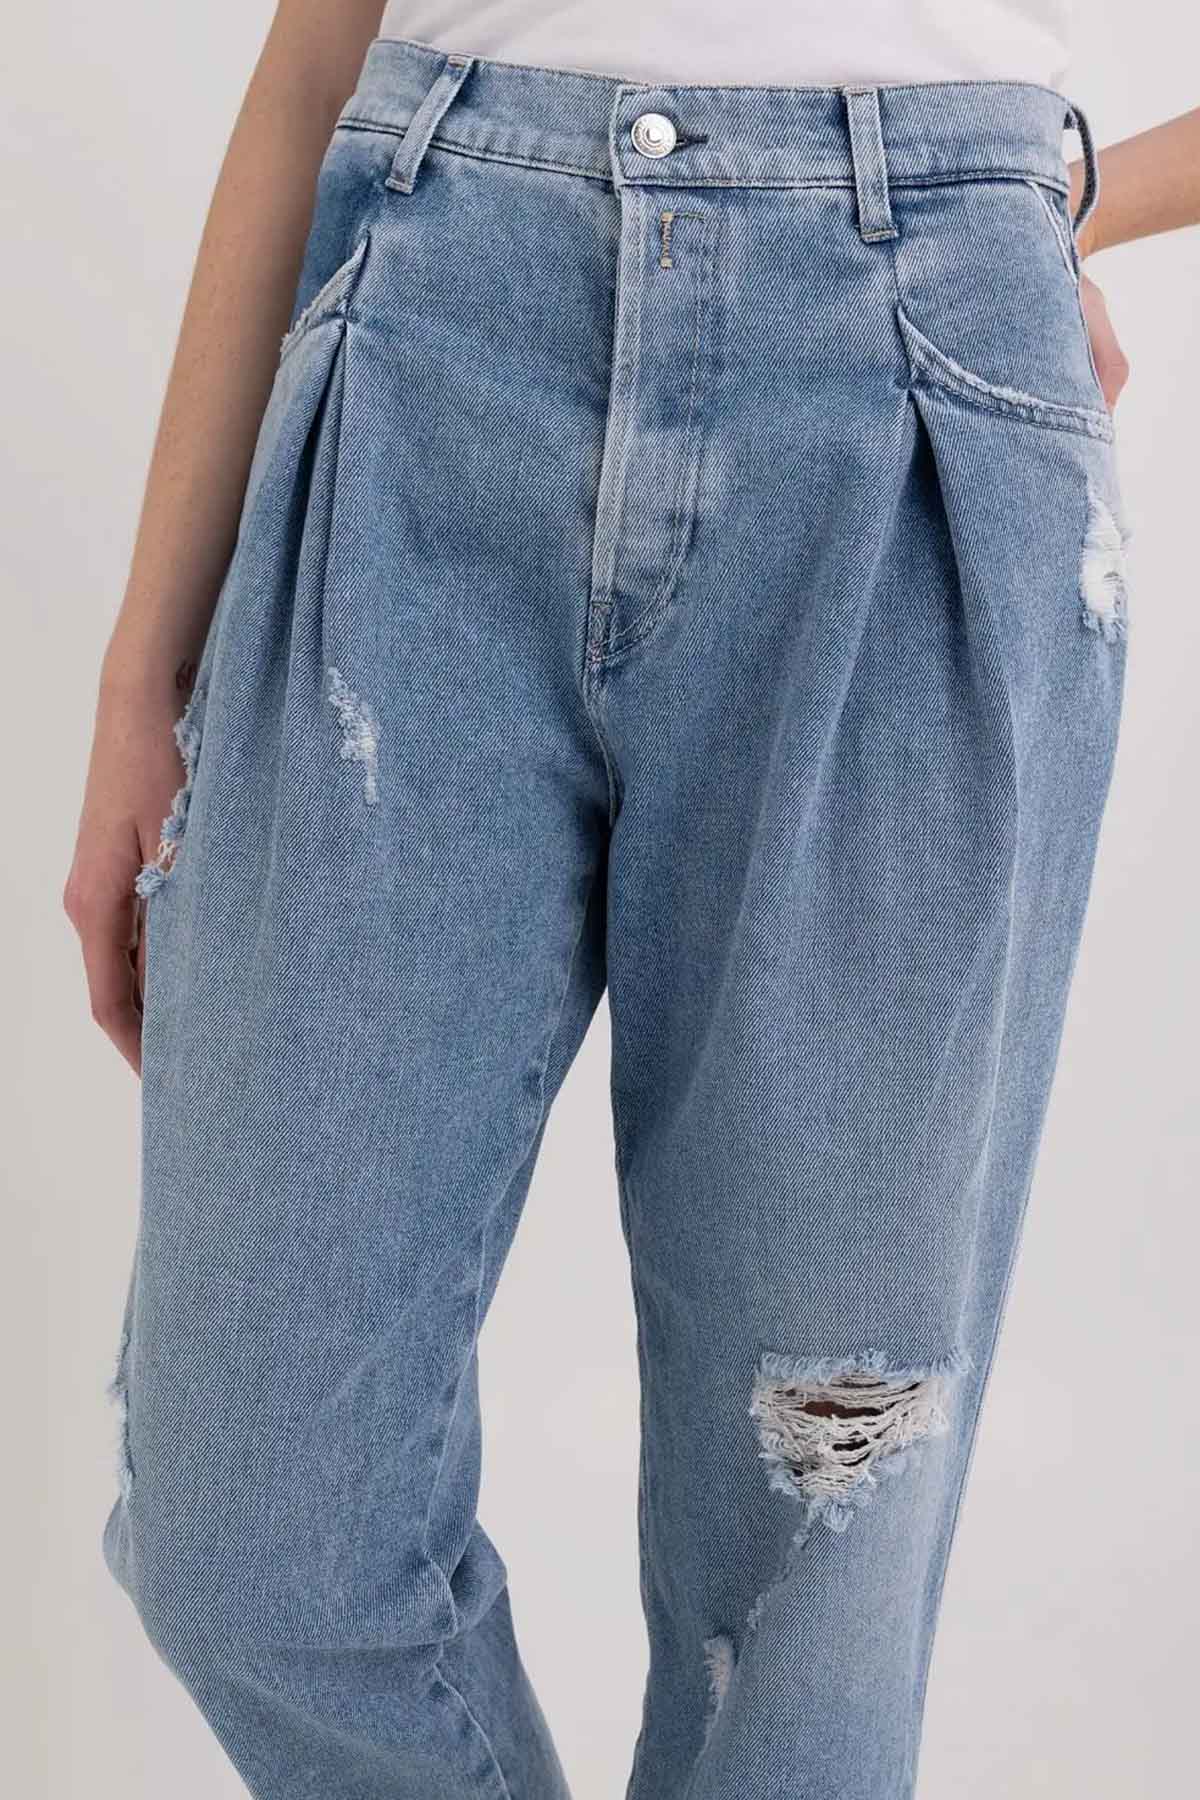 Replay Boyfriend Fit Tek Pile Jeans-Libas Trendy Fashion Store